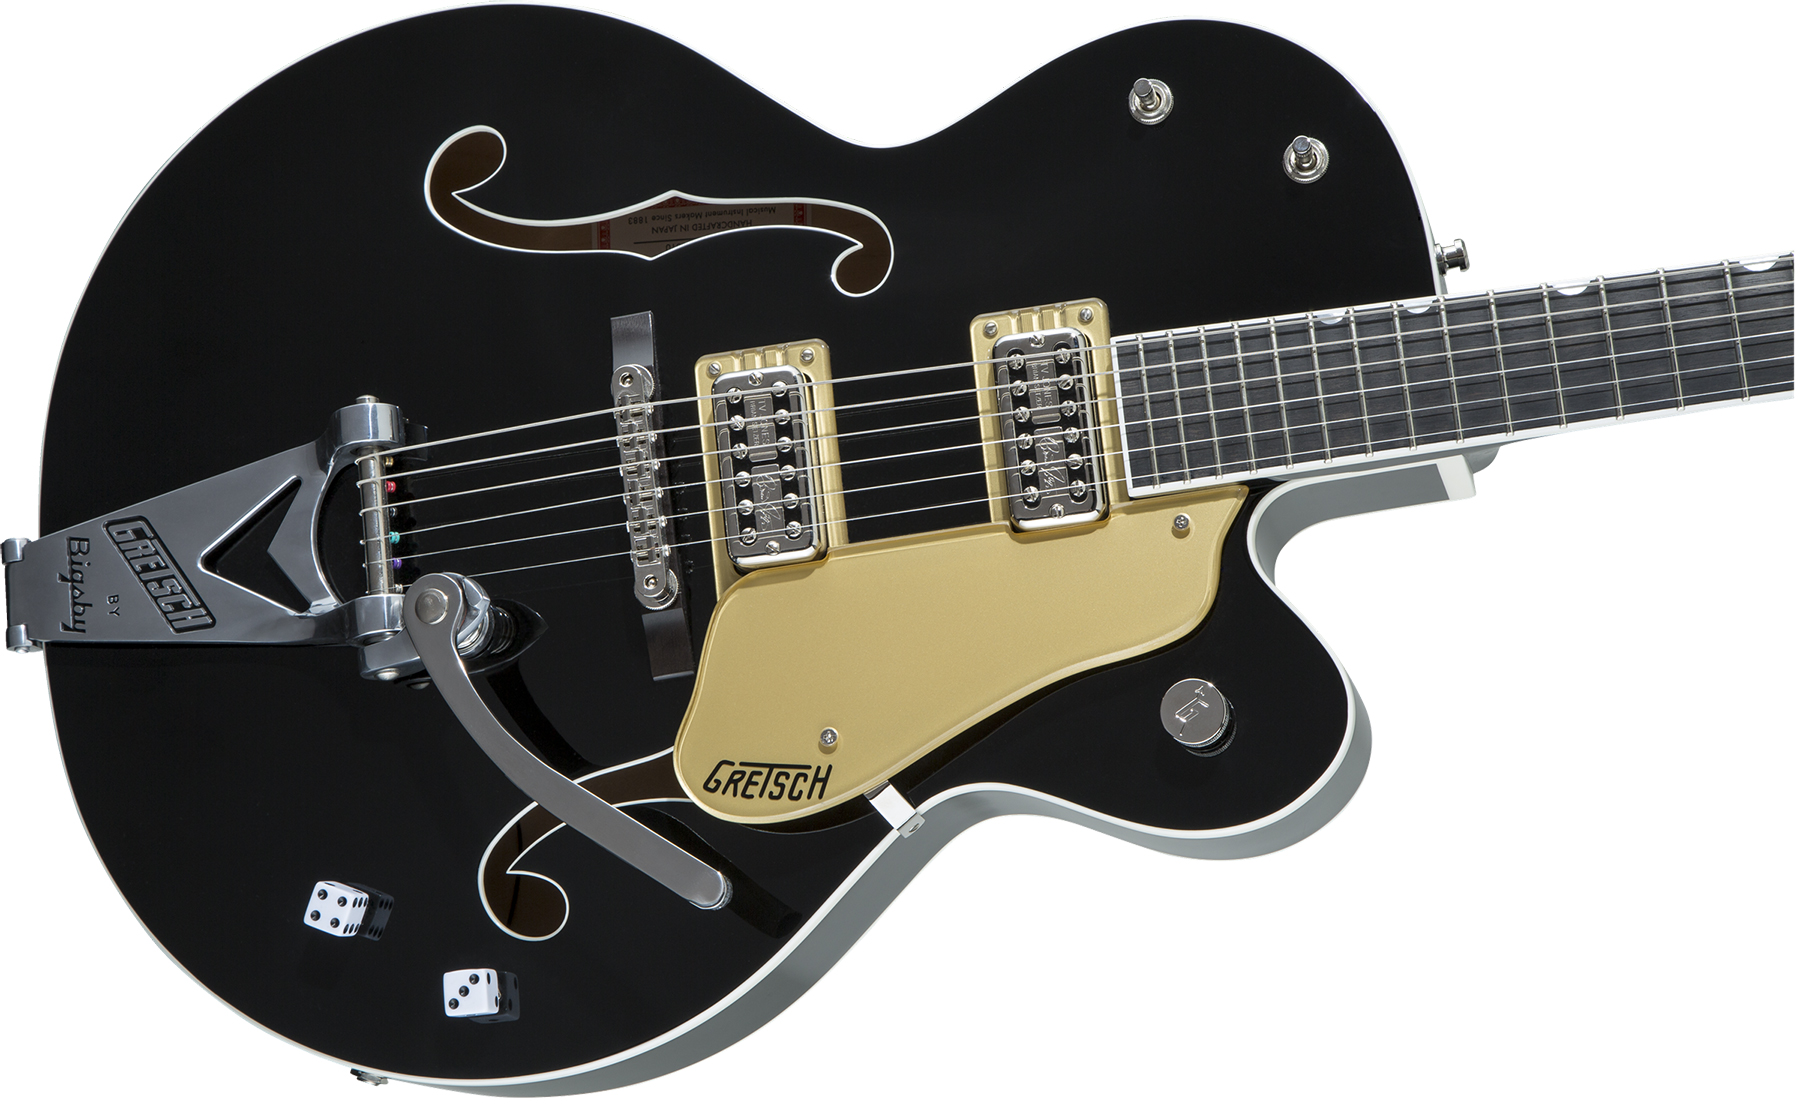 Gretsch Brian Setzer G6120t-bsnsh Nashville Japon Signature Bigsby Eb - Black Lacquer - Semi hollow elektriche gitaar - Variation 2